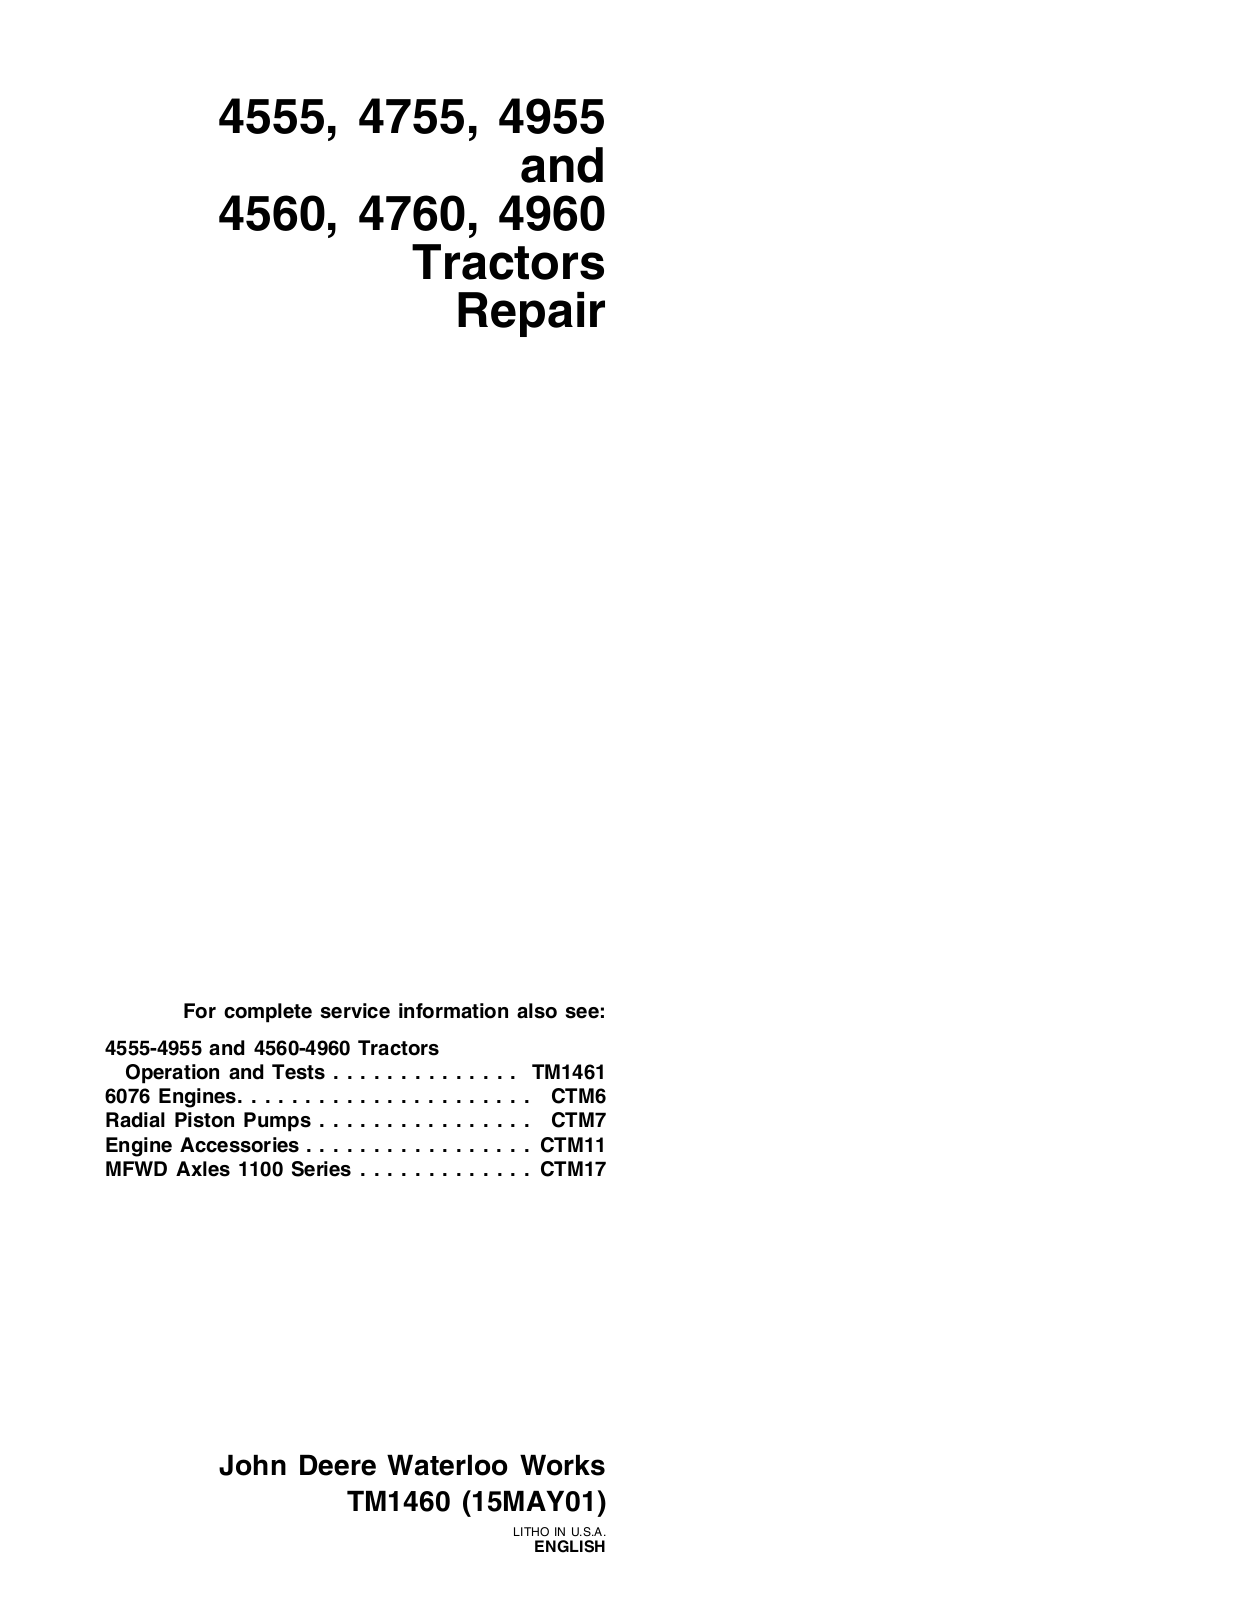 john deere 4955, 4555, 4755, 4560, 4760 Technical Manual